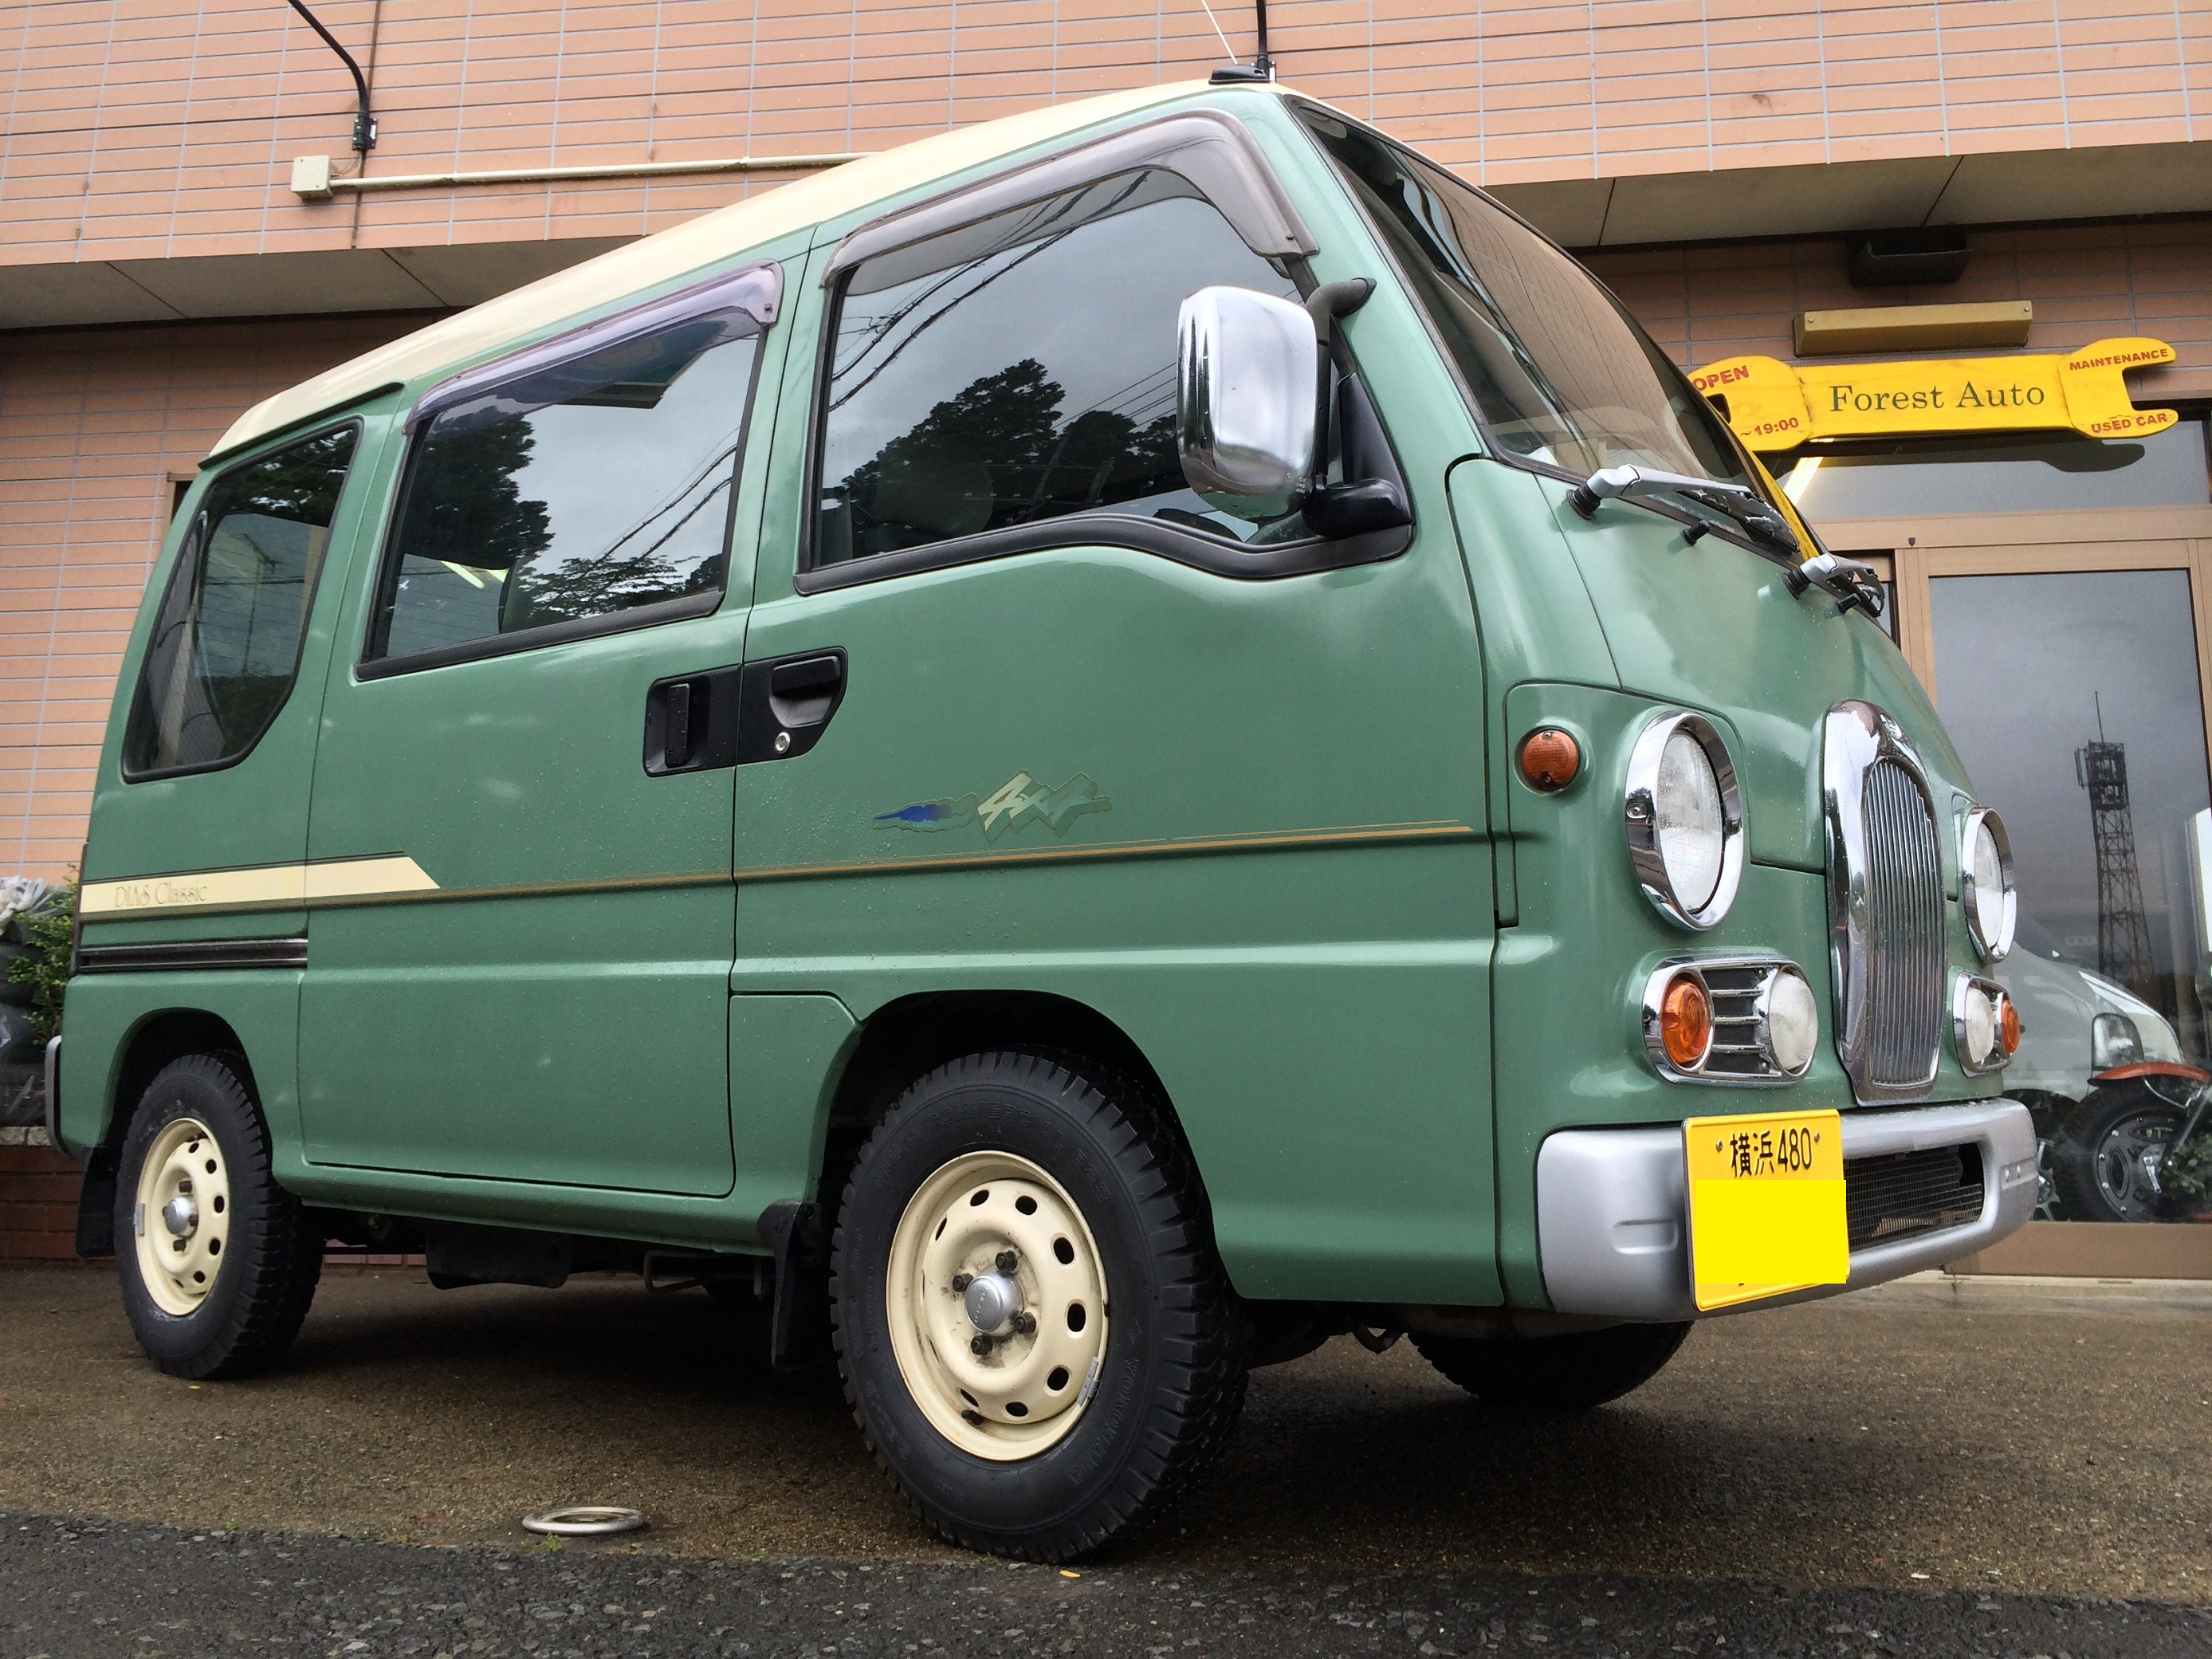 ｽﾊﾞﾙ ｻﾝﾊﾞｰ ｸﾗｼｯｸ 4WD（型式KV4） 神奈川県 横浜市 S 様 - Home